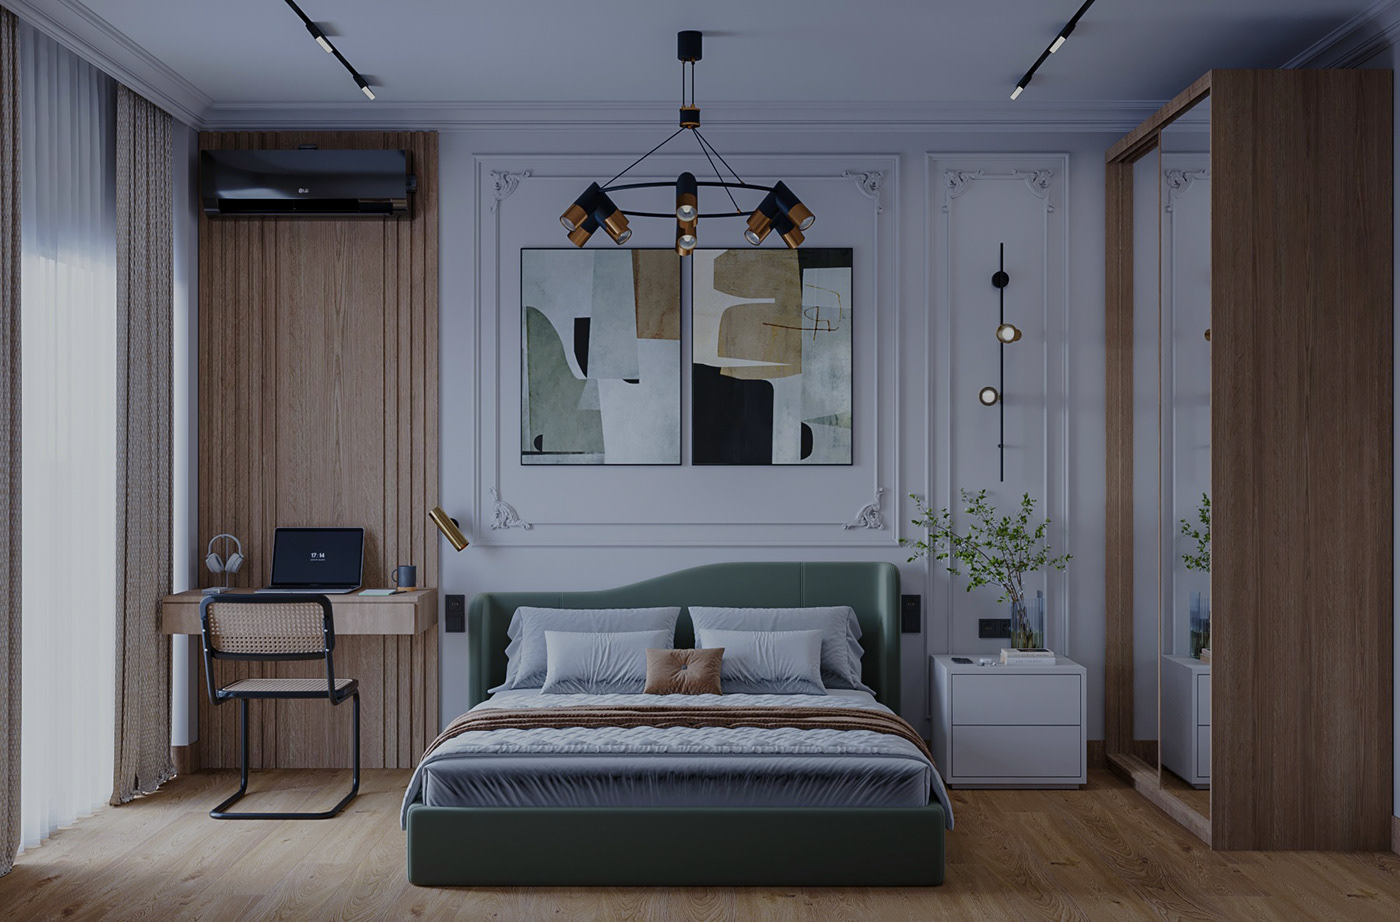 bedroom interior design  Interior Bedroom interior bedroomdesign corona render  3ds max photoshop workspace designer